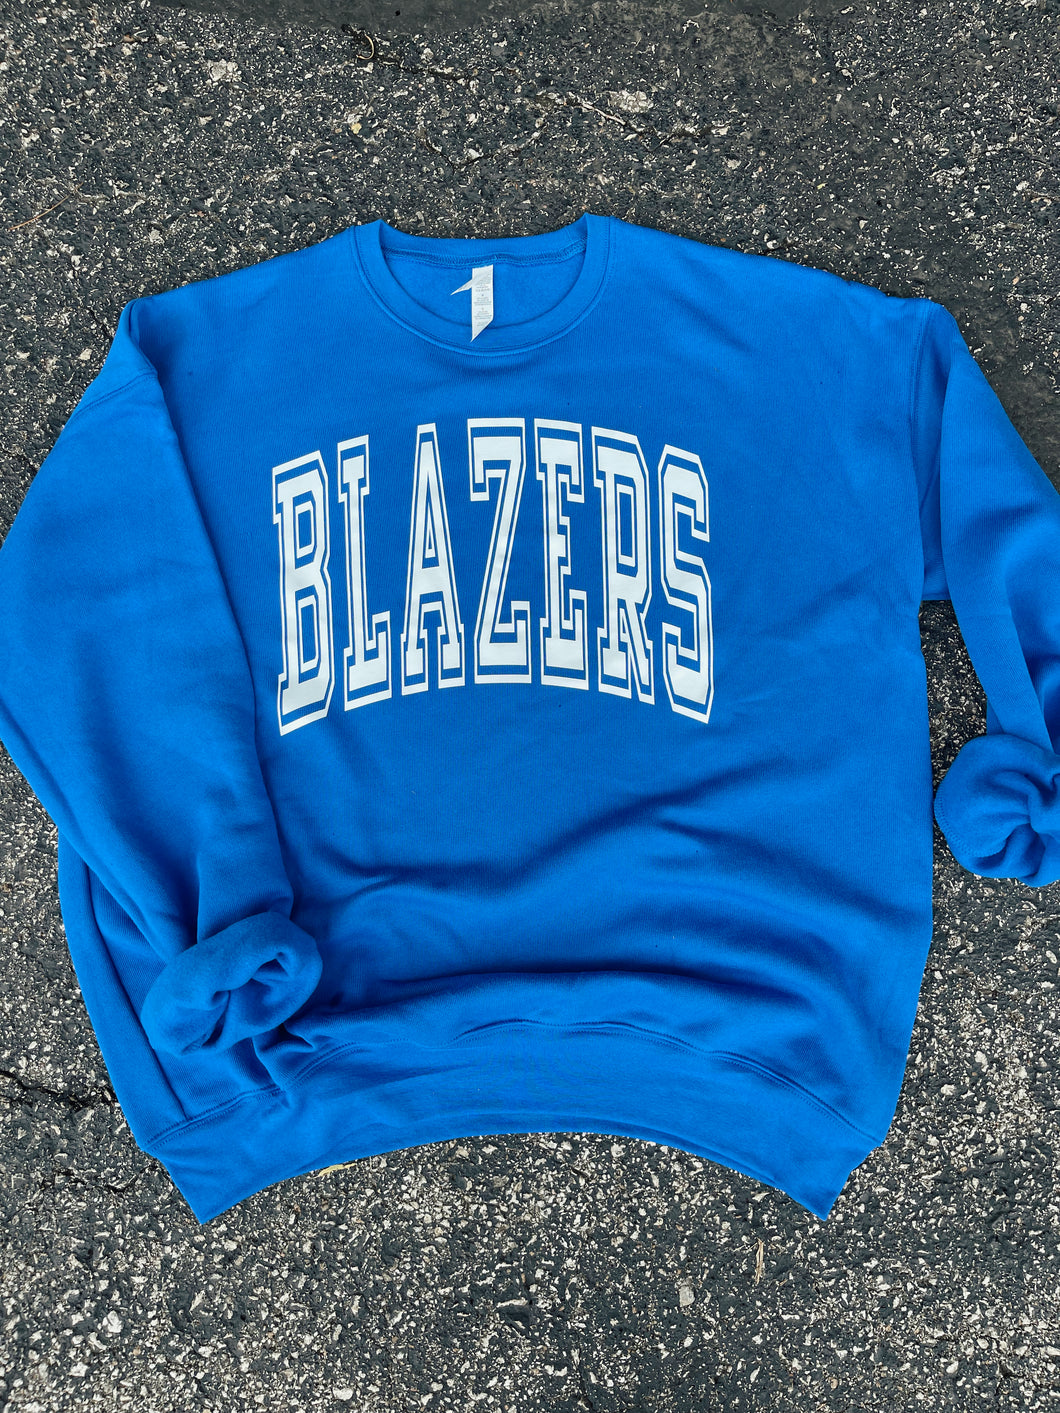 Blazers Collegiate Sweatshirt